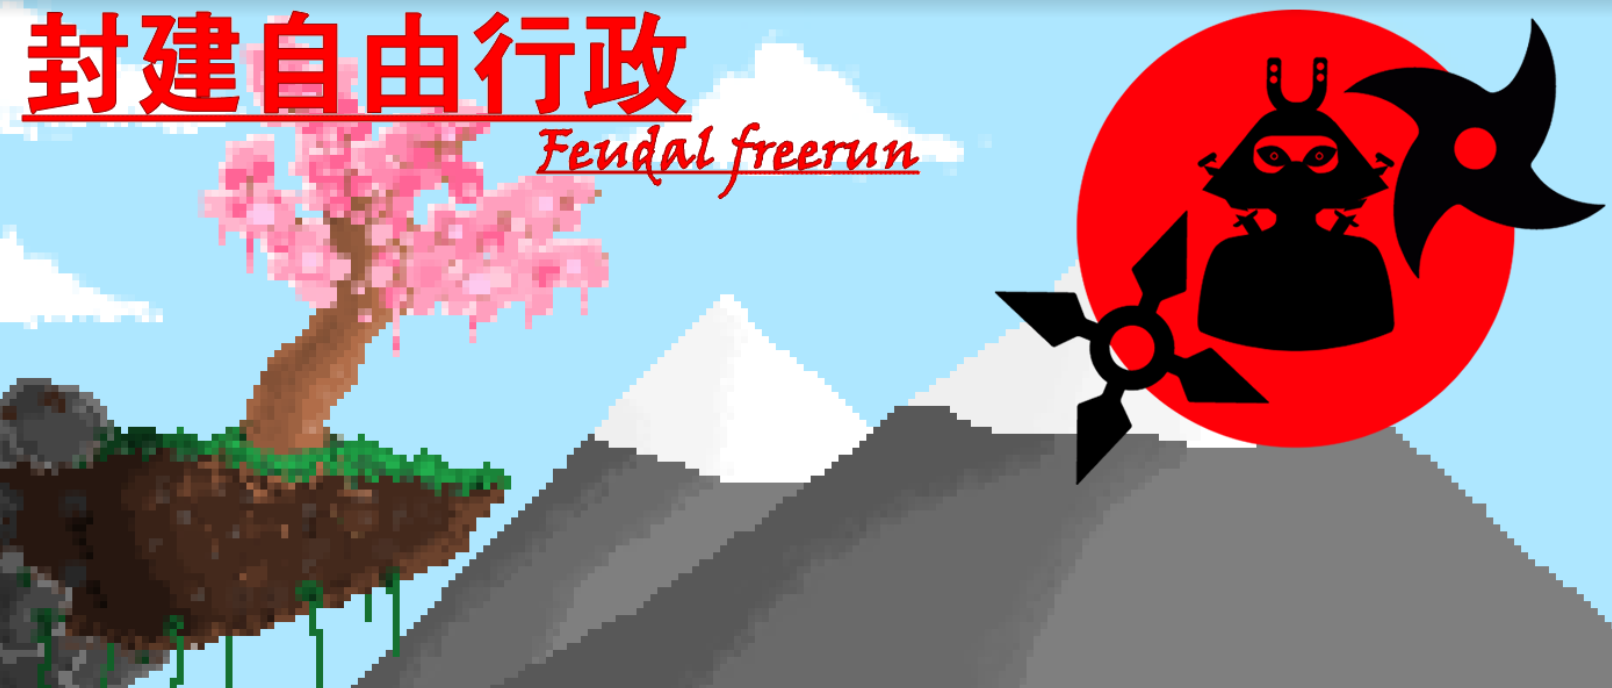 Feudal Free-run